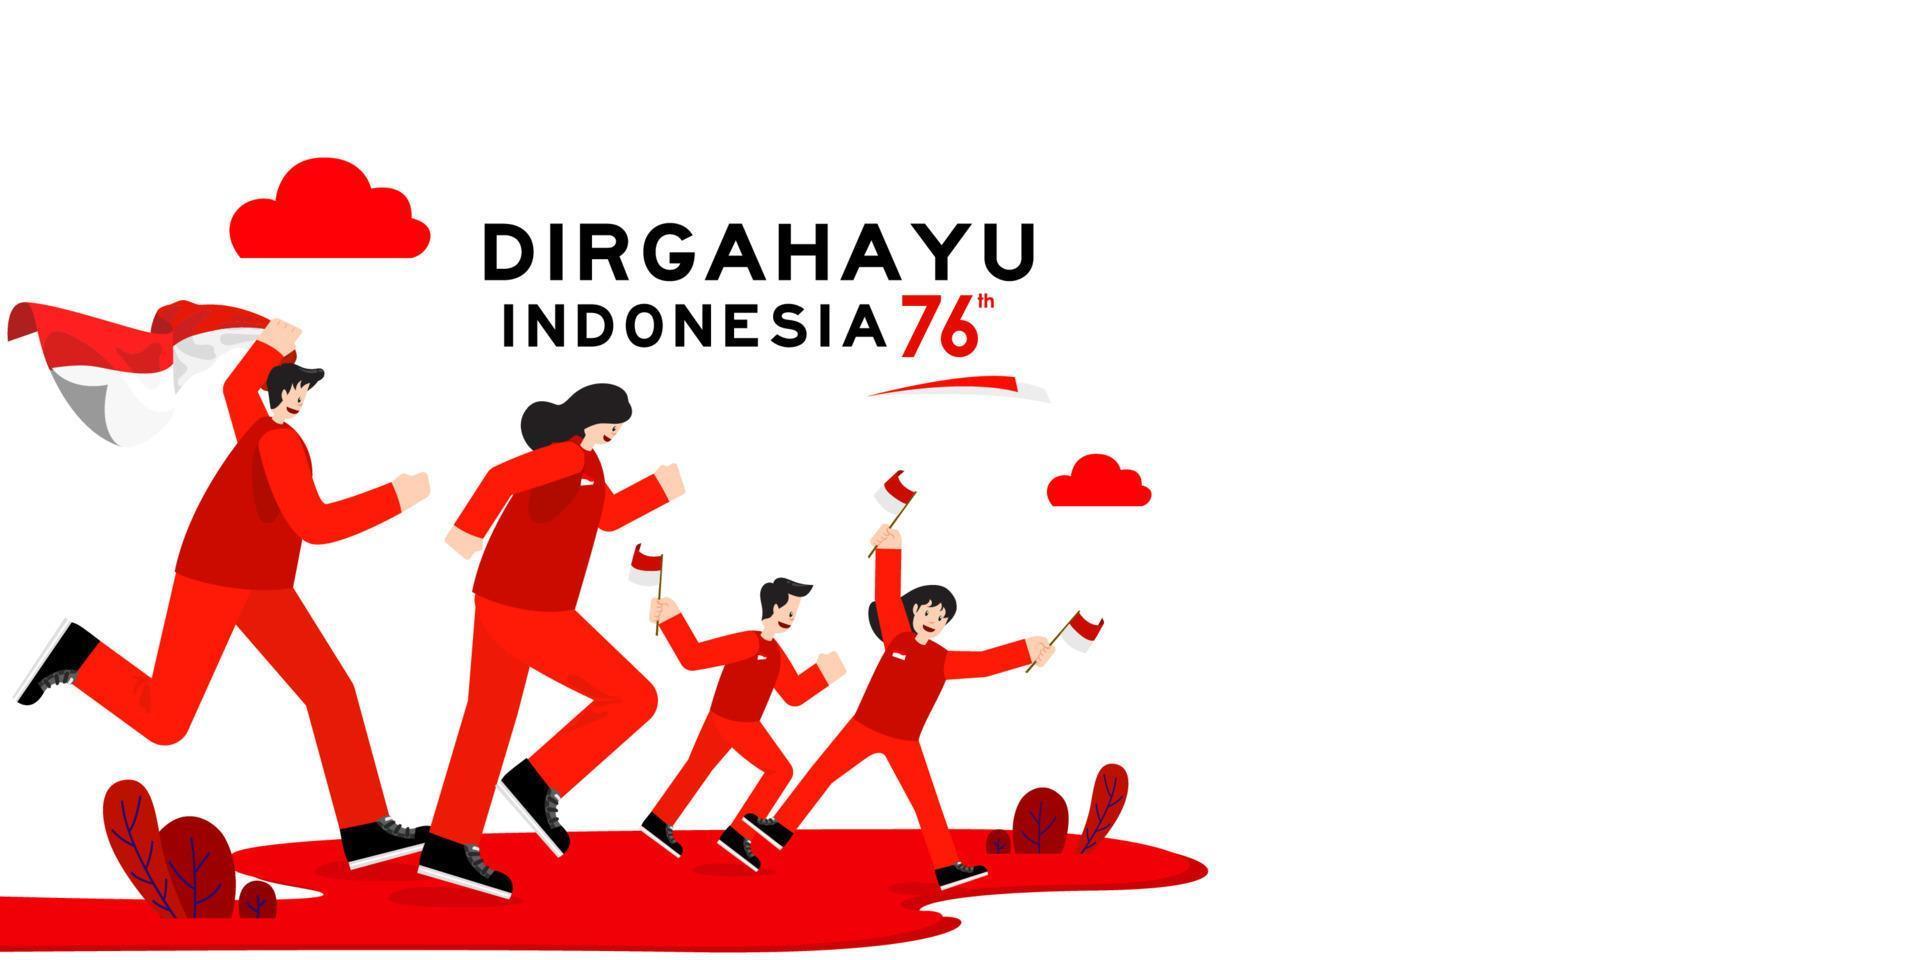 17. August. indonesien glückliche grußkarte zum unabhängigkeitstag mit familie, kindern freude zusammen seit 76 jahren indonesien freiheit vektor